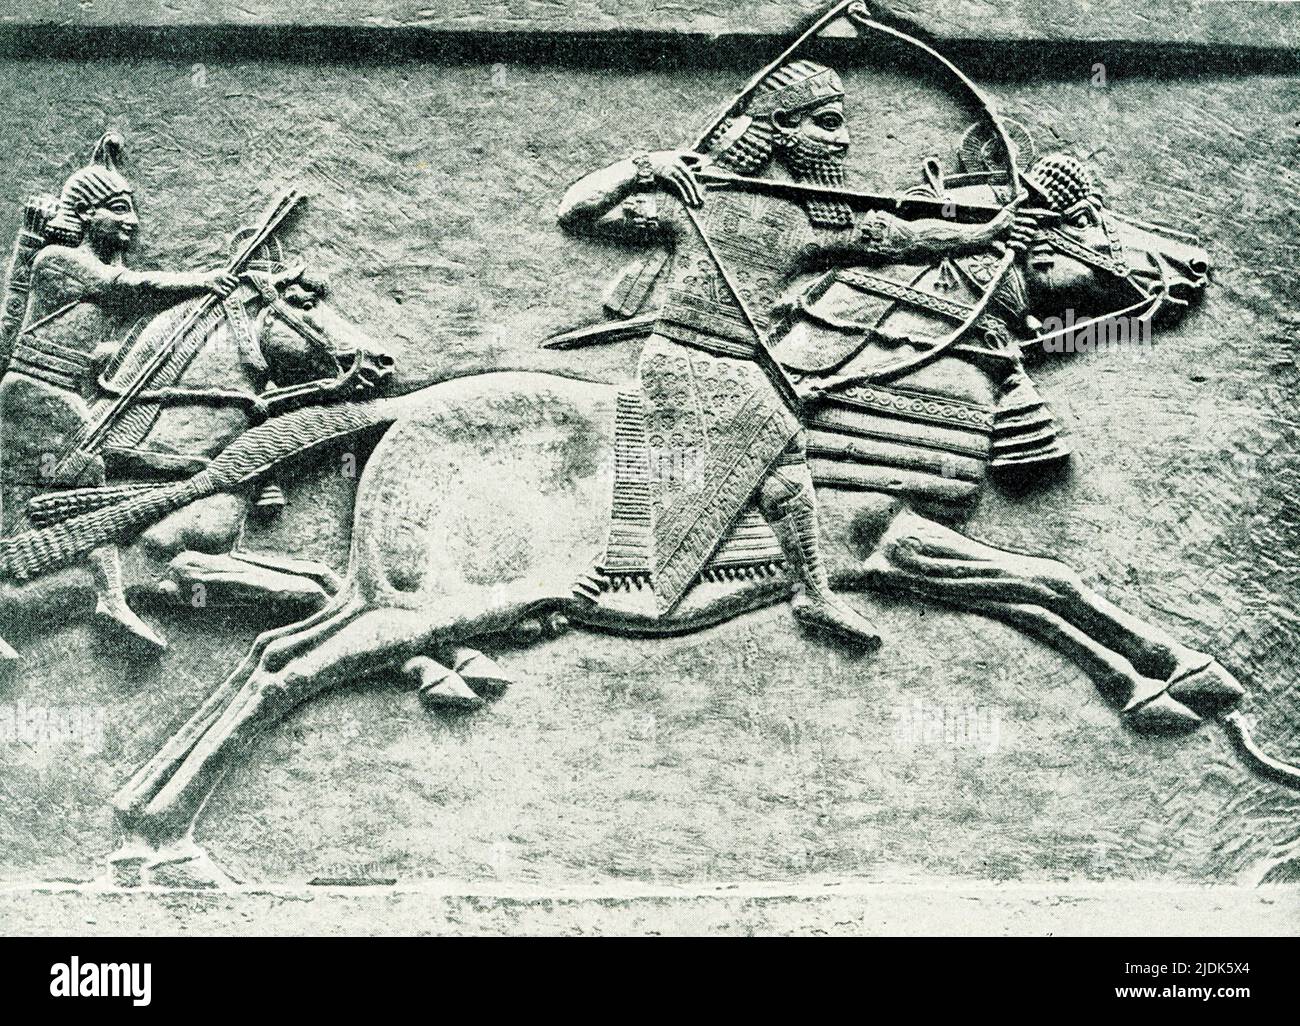 Questa immagine del 1910 mostra una caccia assira re. Il rilievo di pietra si trova nel British Museum di Londra. Qui, il re Ashurbanipal si allatta in avanti, sparando agli asini selvatici. Uno dei cavalieri dietro di lui ha frecce di riserva e l'altro ha un supporto di riserva. Gli asini sono sparati o tirati giù dai cani. Ashurbanipal governò nel 600s a.C. La data di questo rilievo scoperto nel Palazzo Nord a Ninive è 645-635 AC. Foto Stock